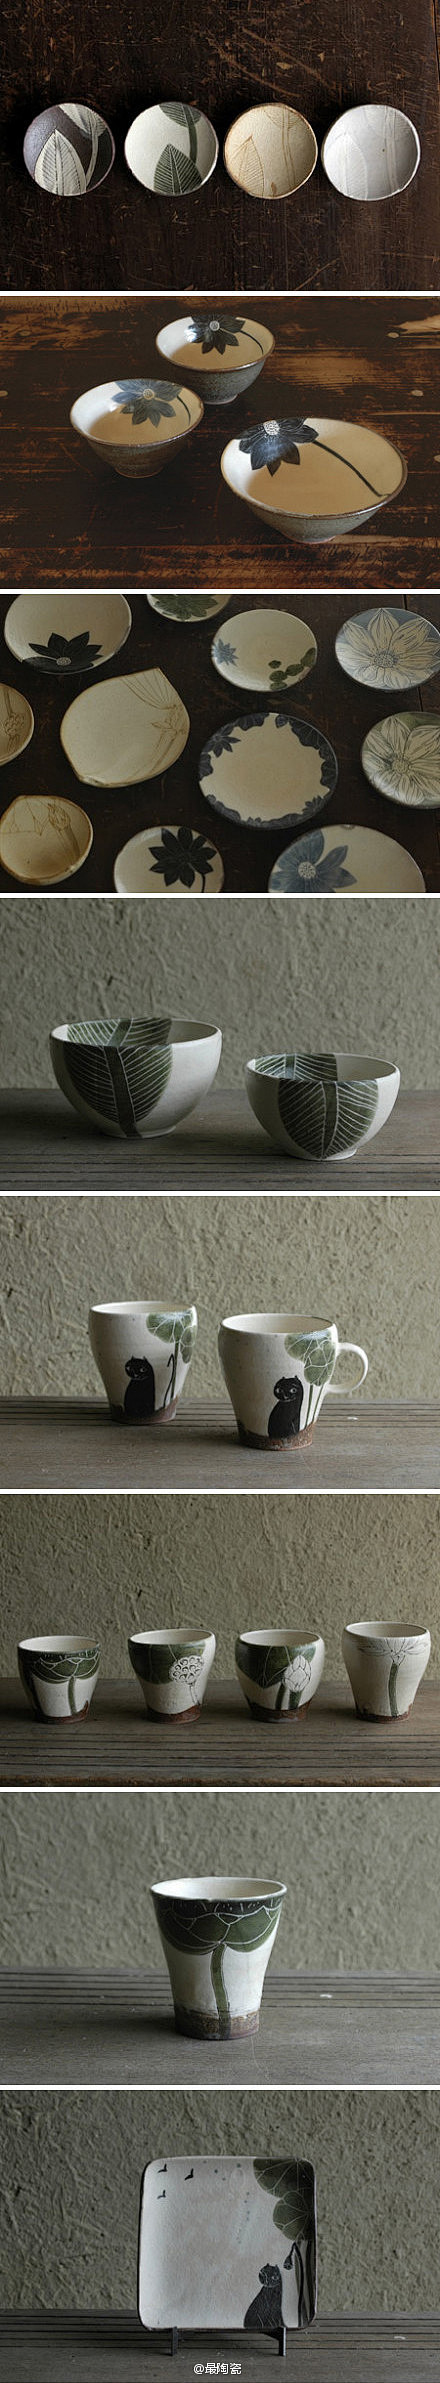 大谷桃子: 一个爱好陶艺的美术家。她特别...